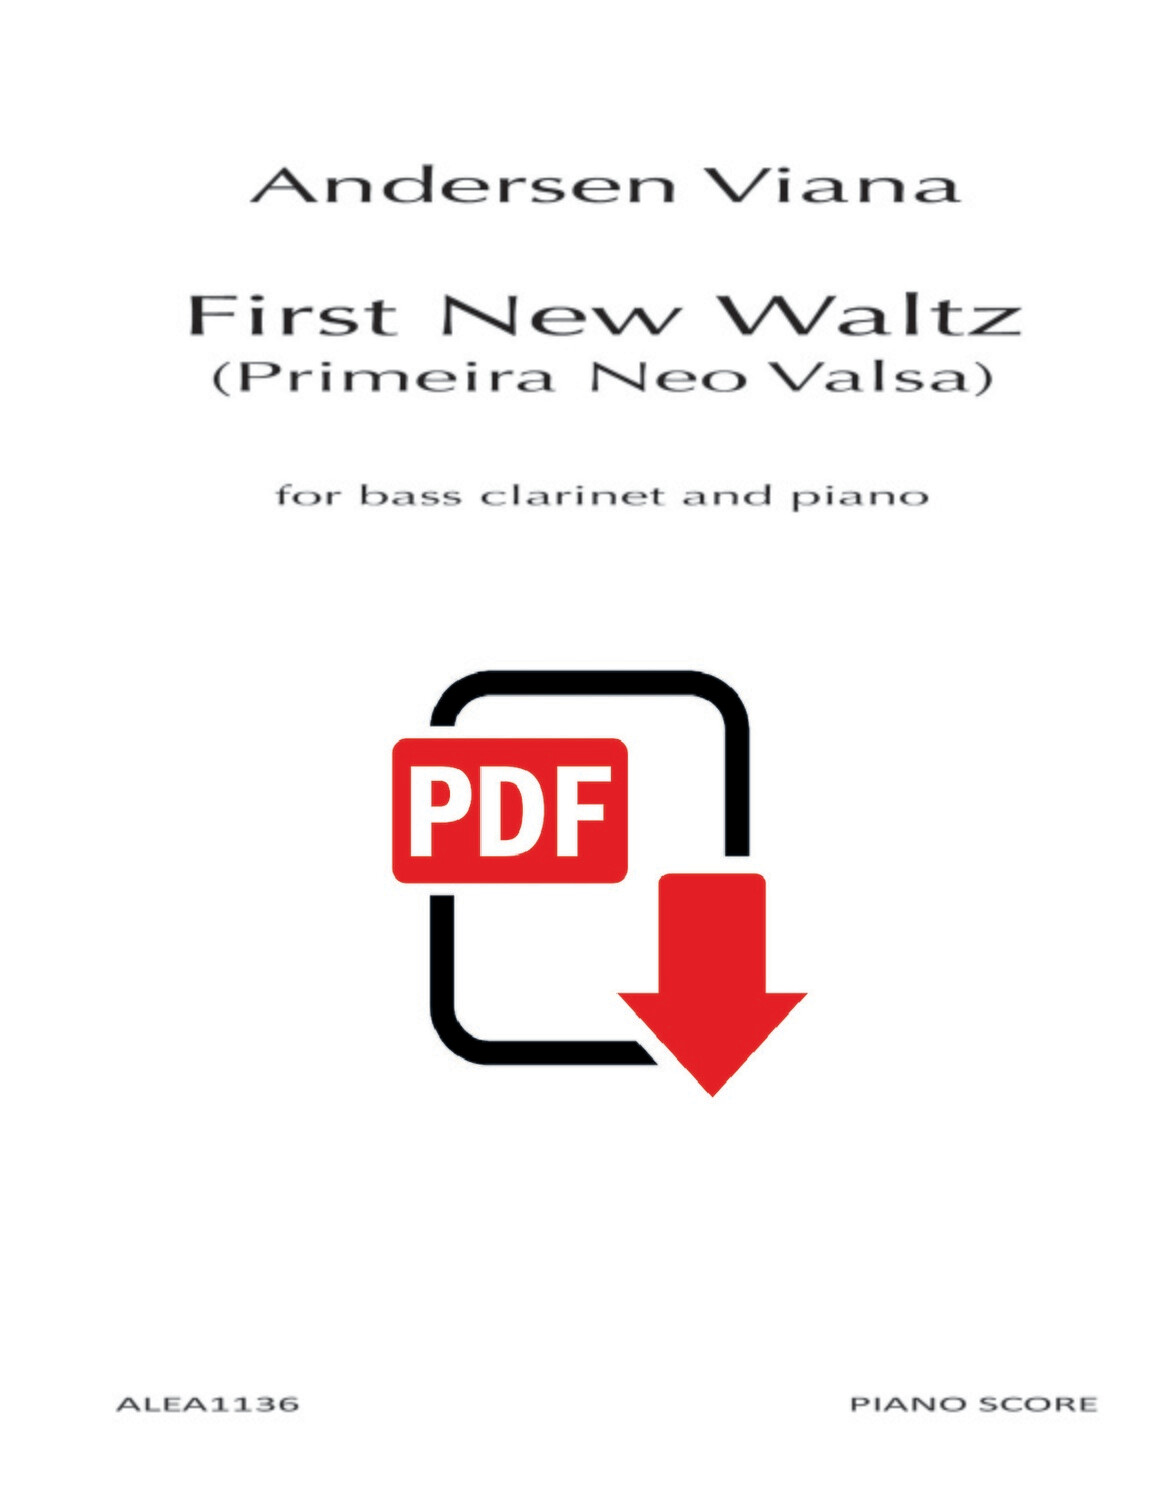 Viana: First New Waltz (PDF)